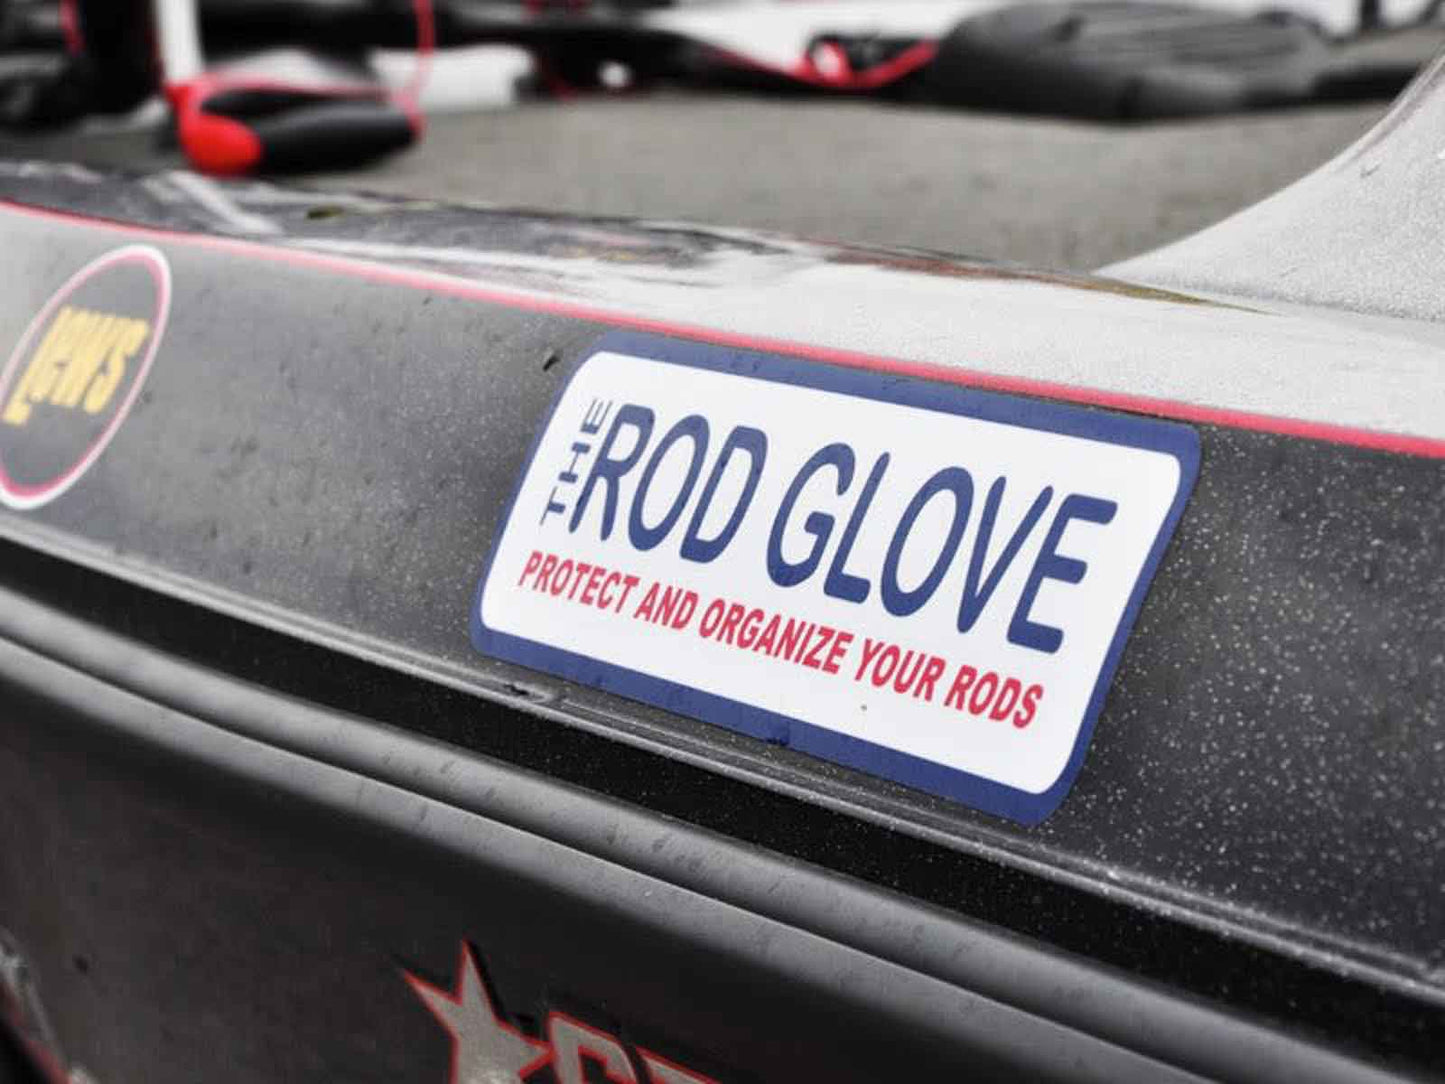 Rod Glove Decals